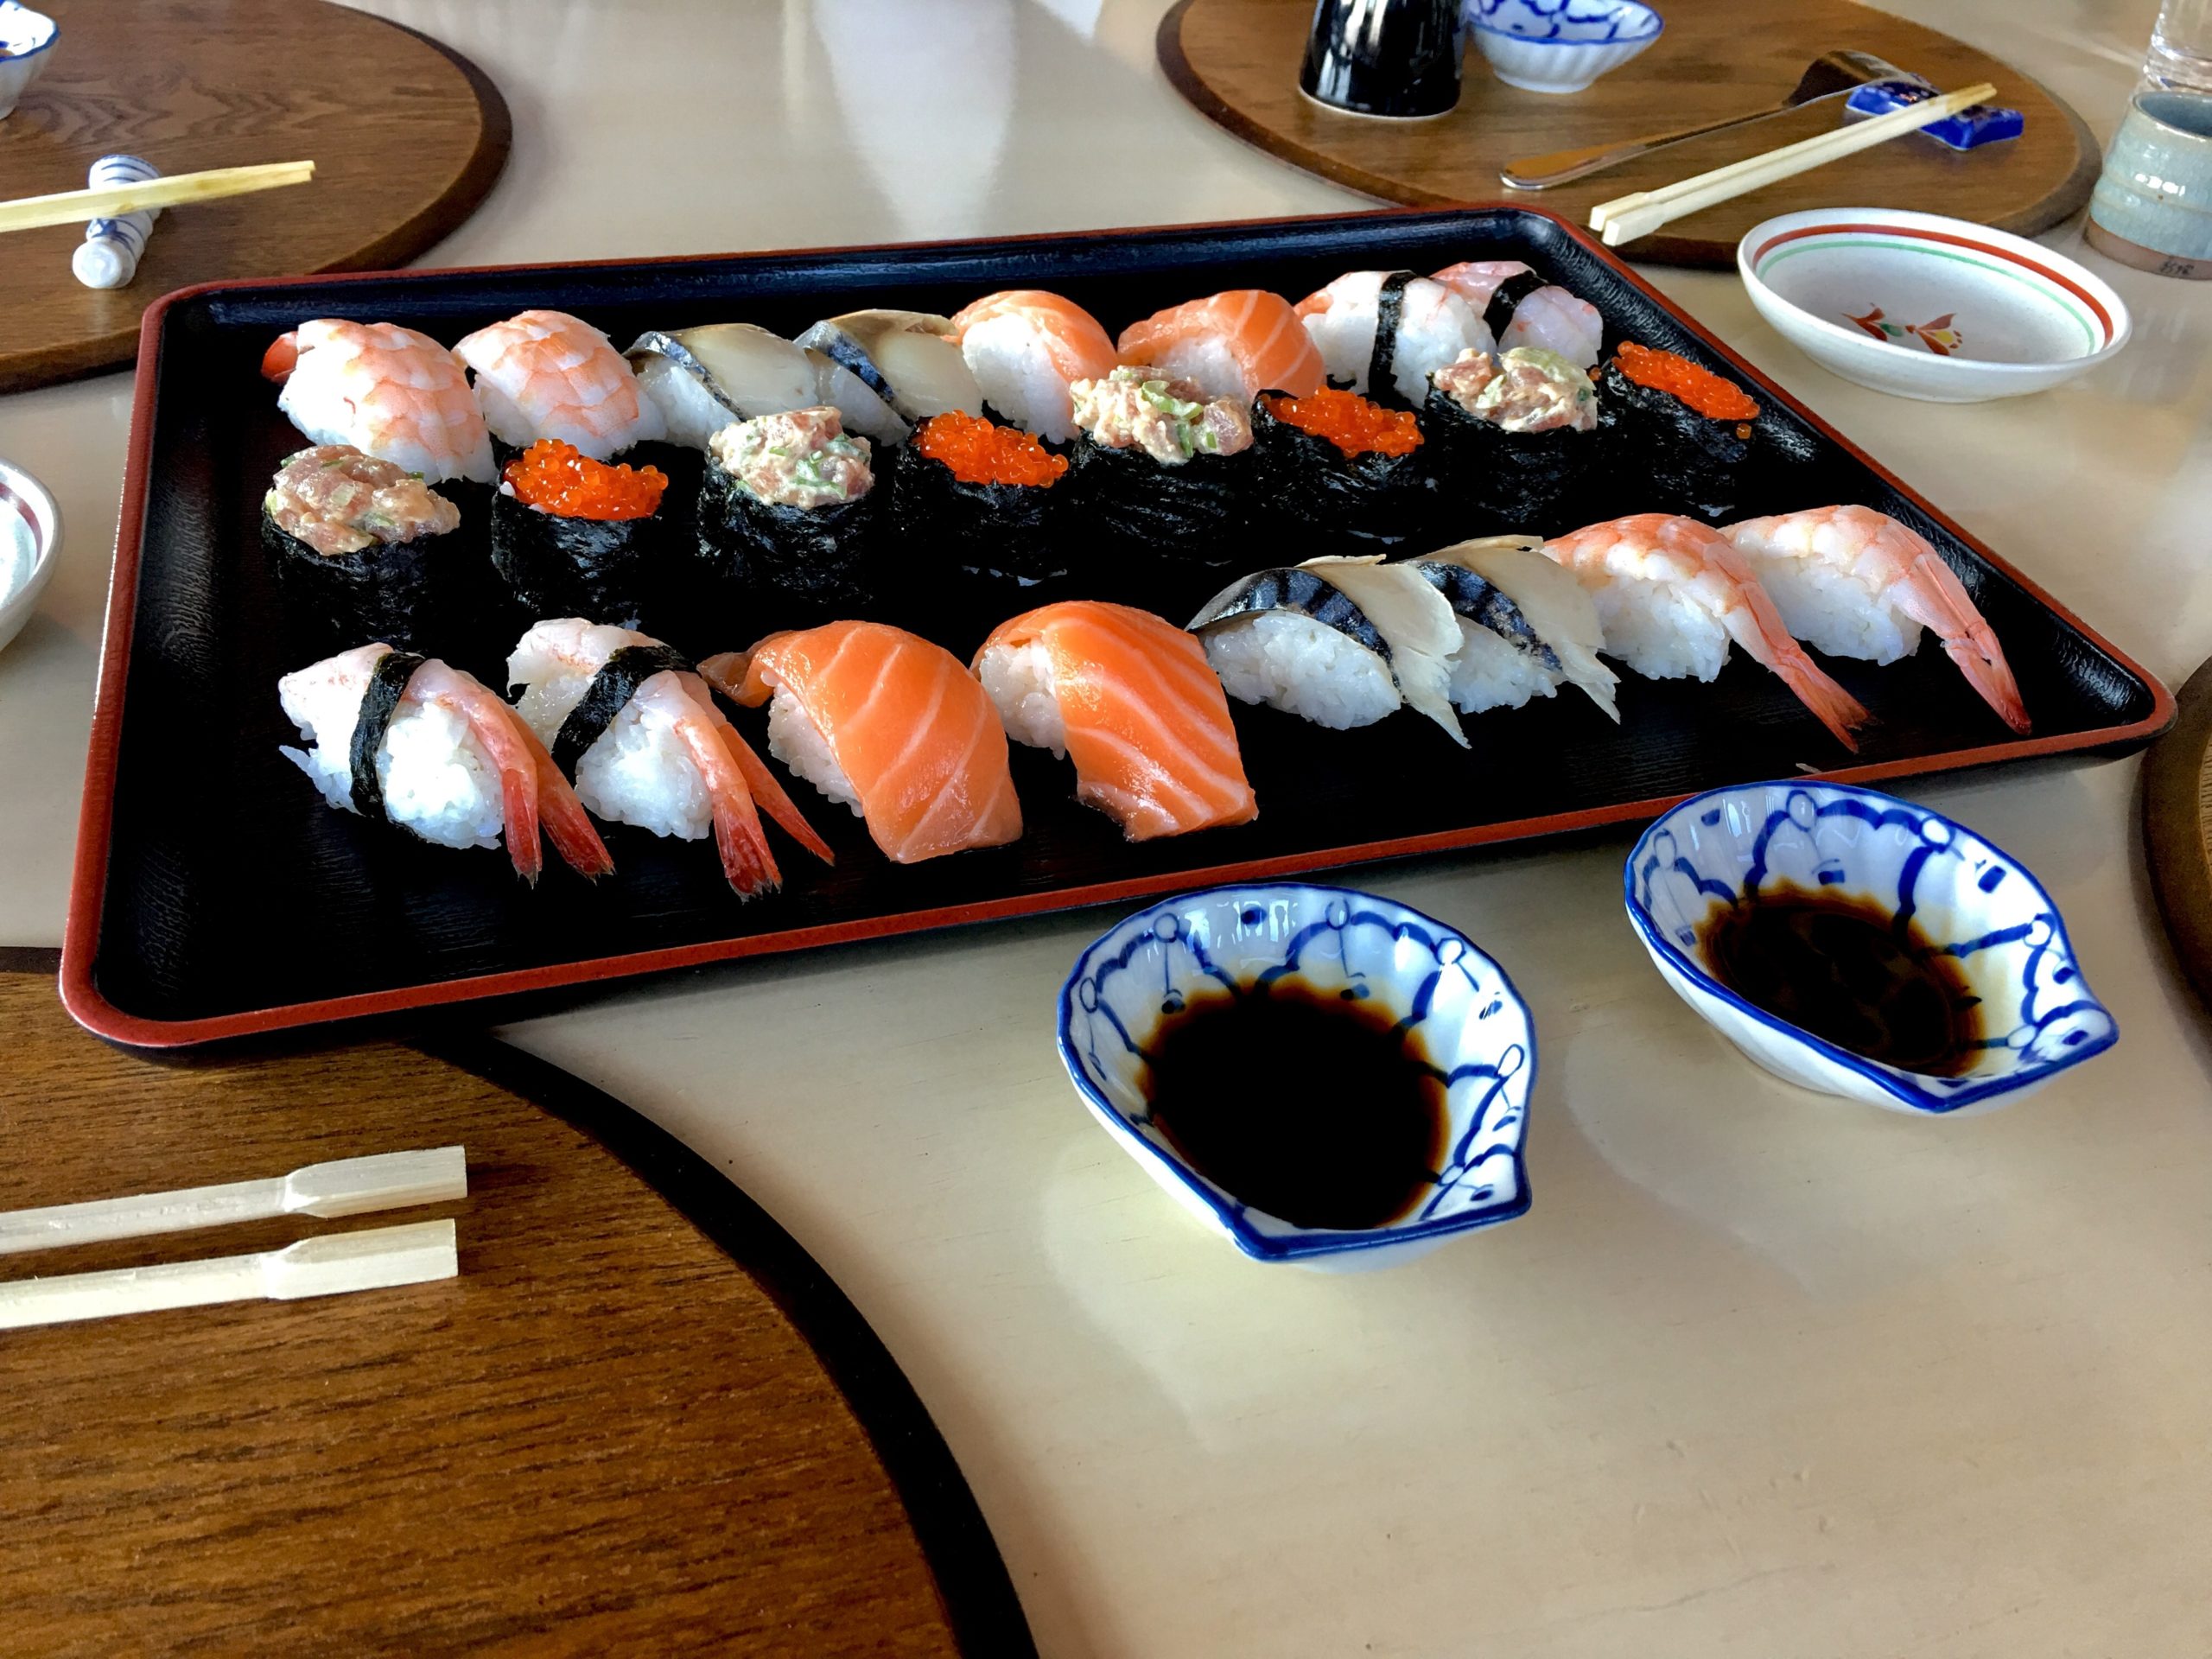 Польза суши для здоровья